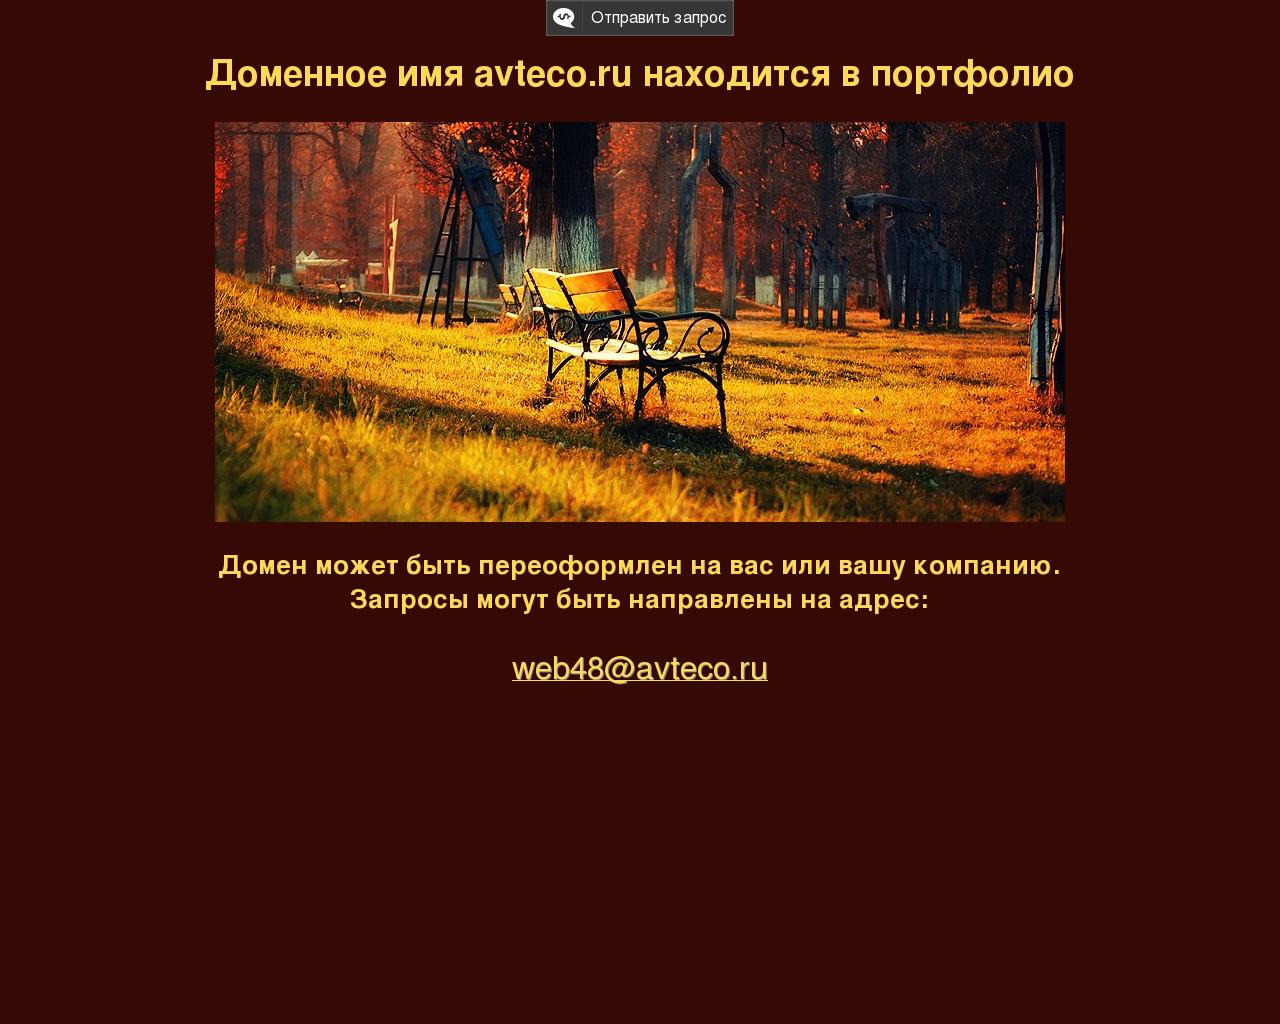 Изображение сайта avteco.ru в разрешении 1280x1024